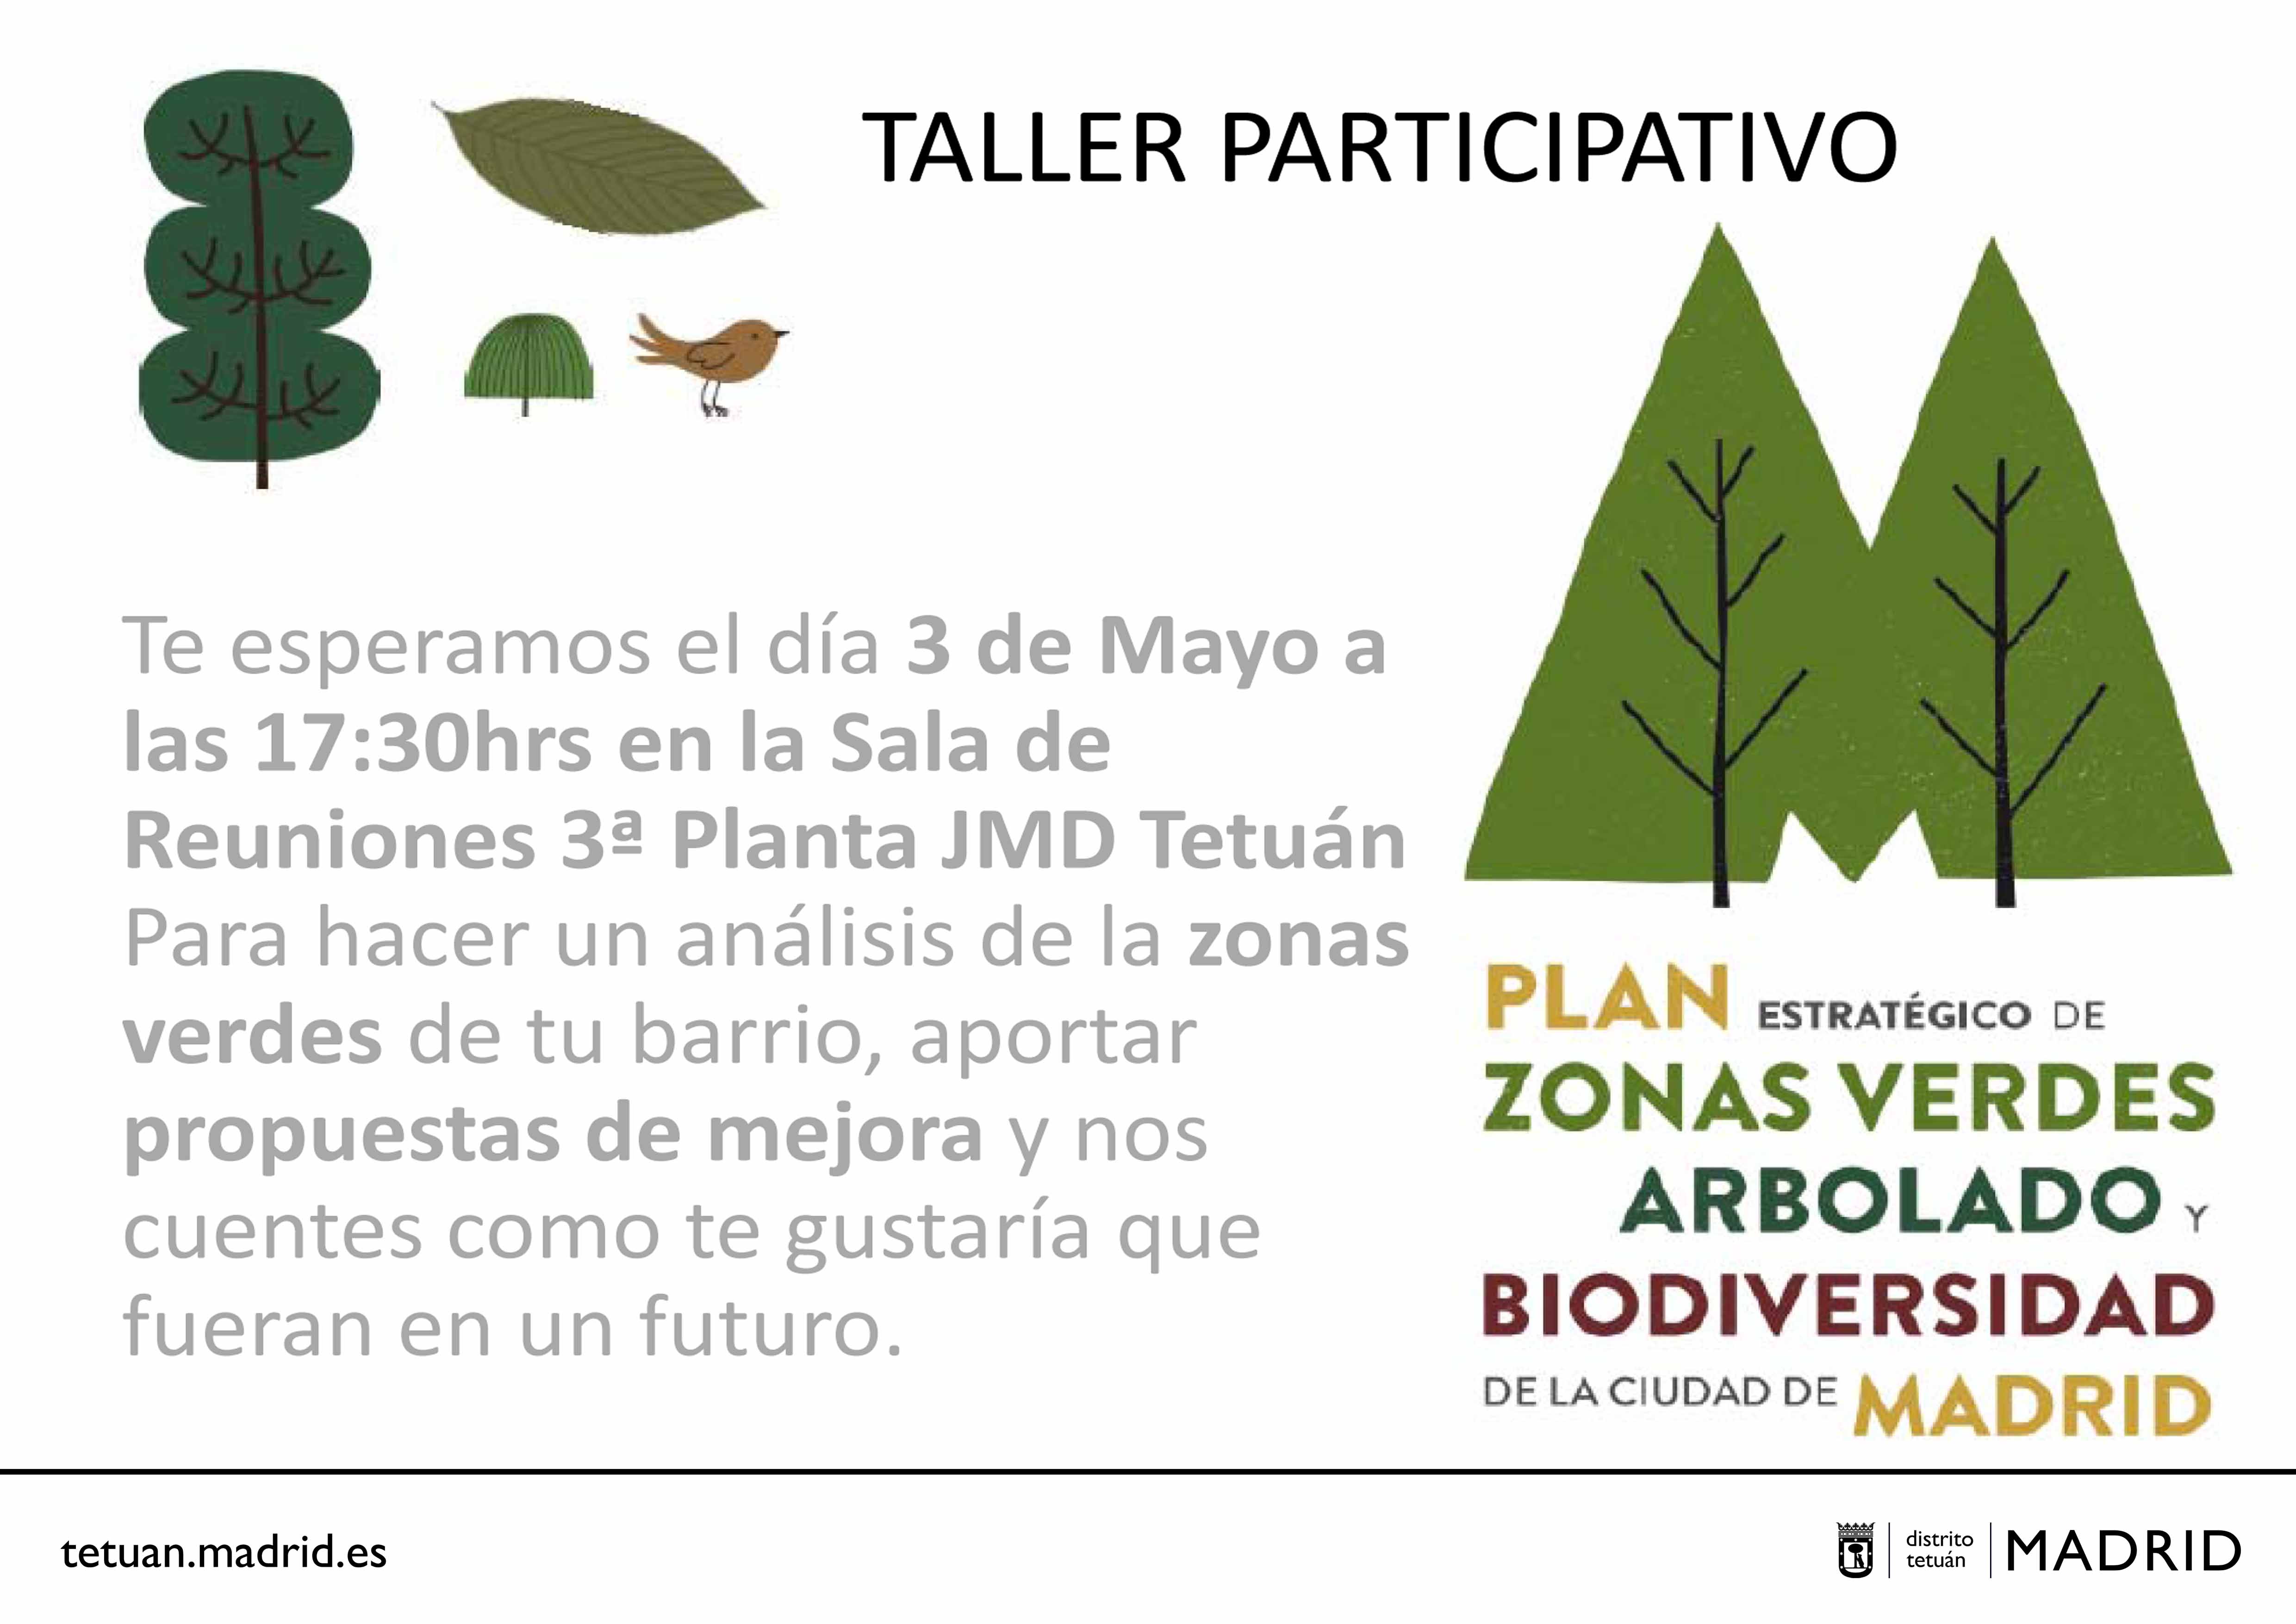 Taller de Zonas Verdes y Arbolado en Tetuán abierto a la ciudadanía (3 de mayo)